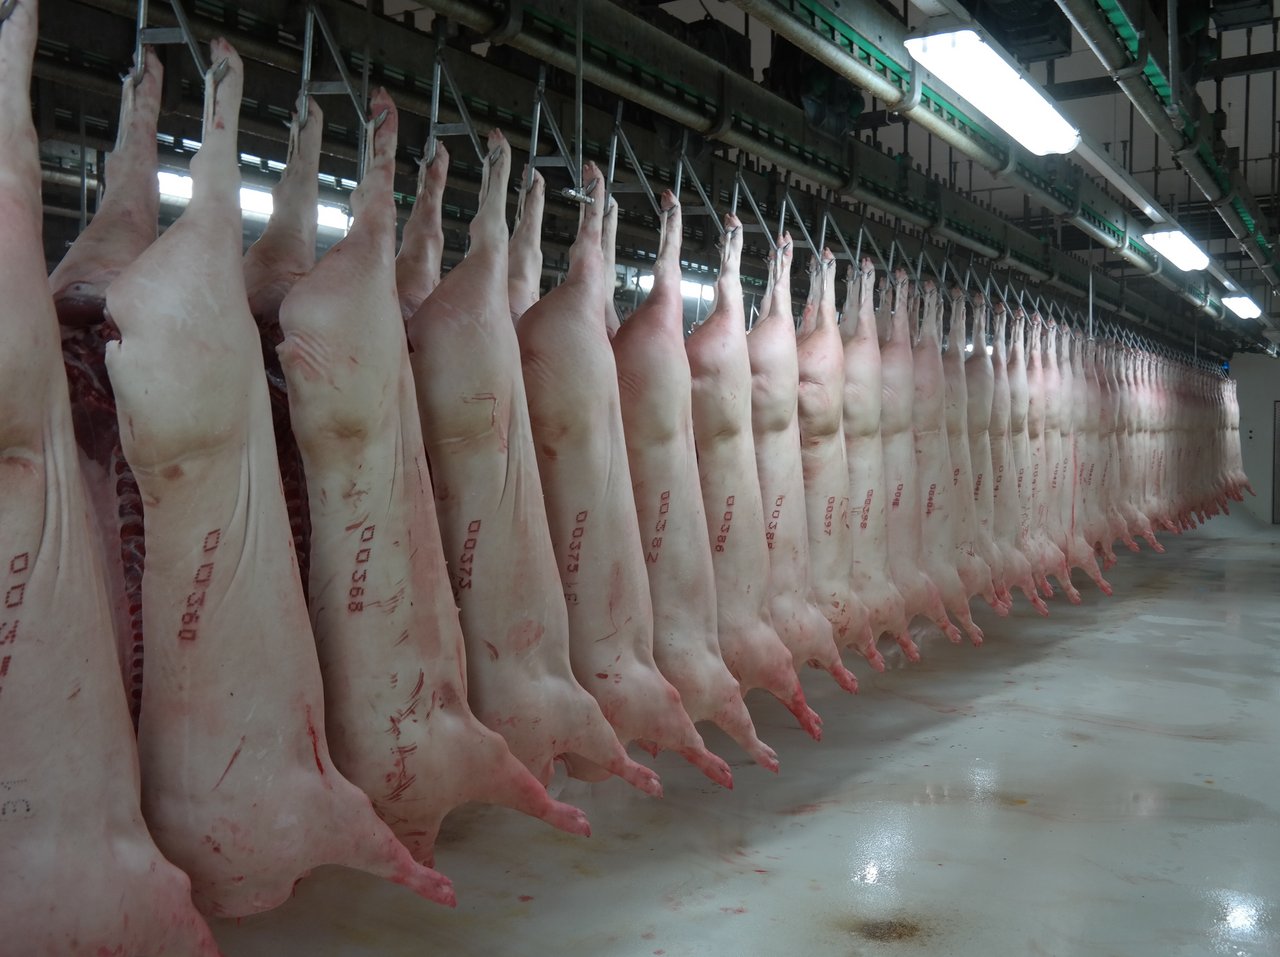 Der aus dem Brexit resultierende Wertverlust des Pfunds dämpft die EU-Schweinefleischexporte. (Bild Josef Kottmann)